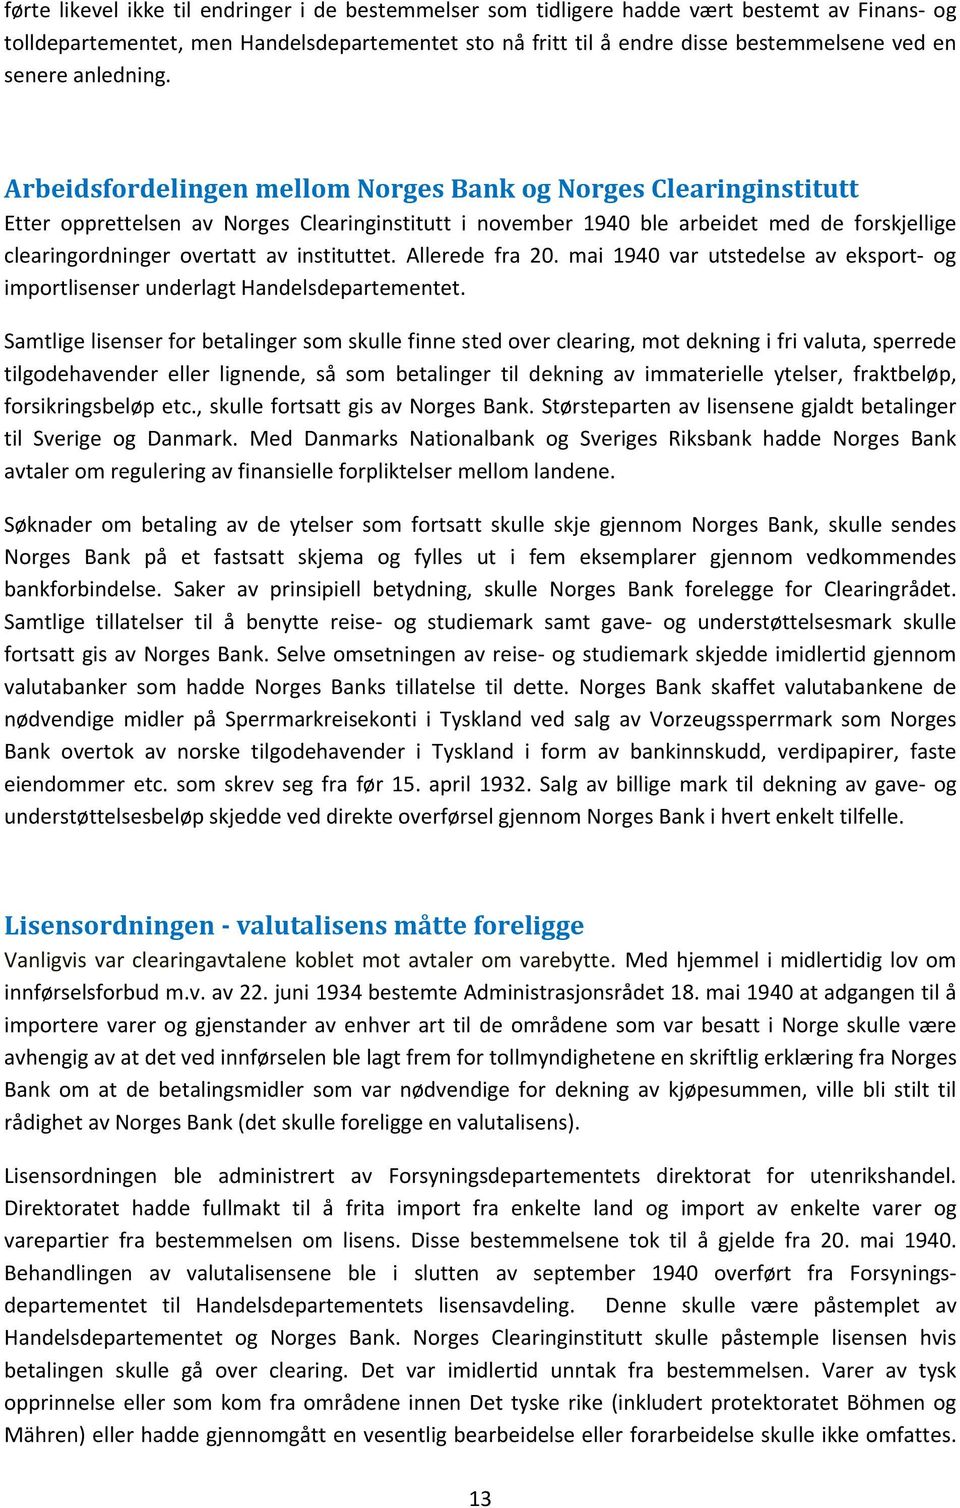 Arbeidsfordelingen mellom Norges Bank og Norges Clearinginstitutt Etter opprettelsen av Norges Clearinginstitutt i november 1940 ble arbeidet med de forskjellige clearingordninger overtatt av